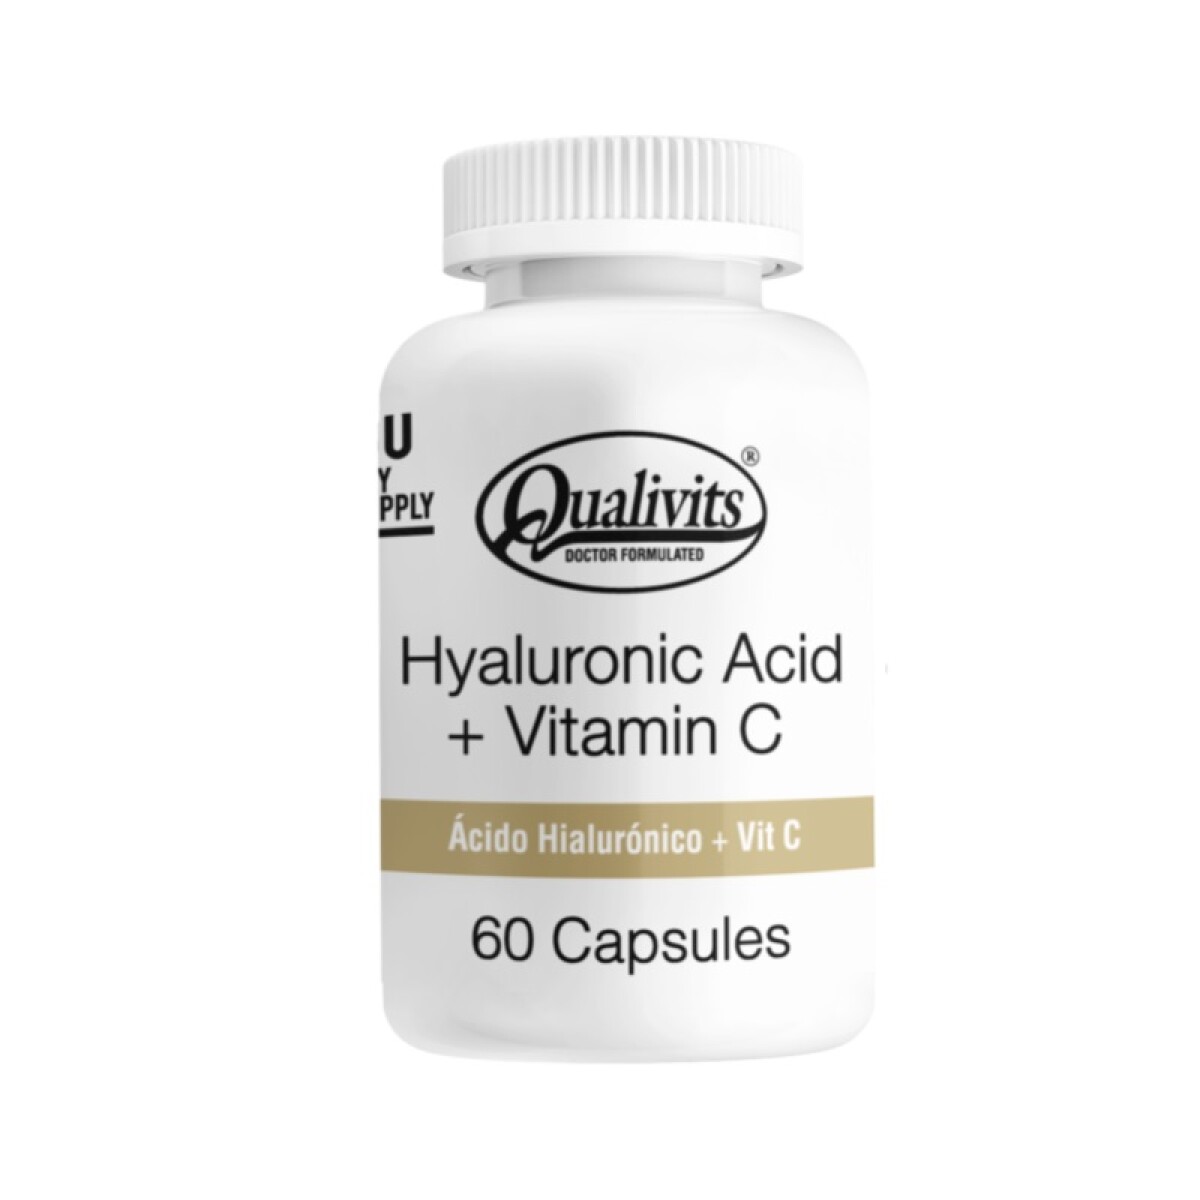 Hyaluronic Acid + Vitamin C Qualivits 60 Caps. 